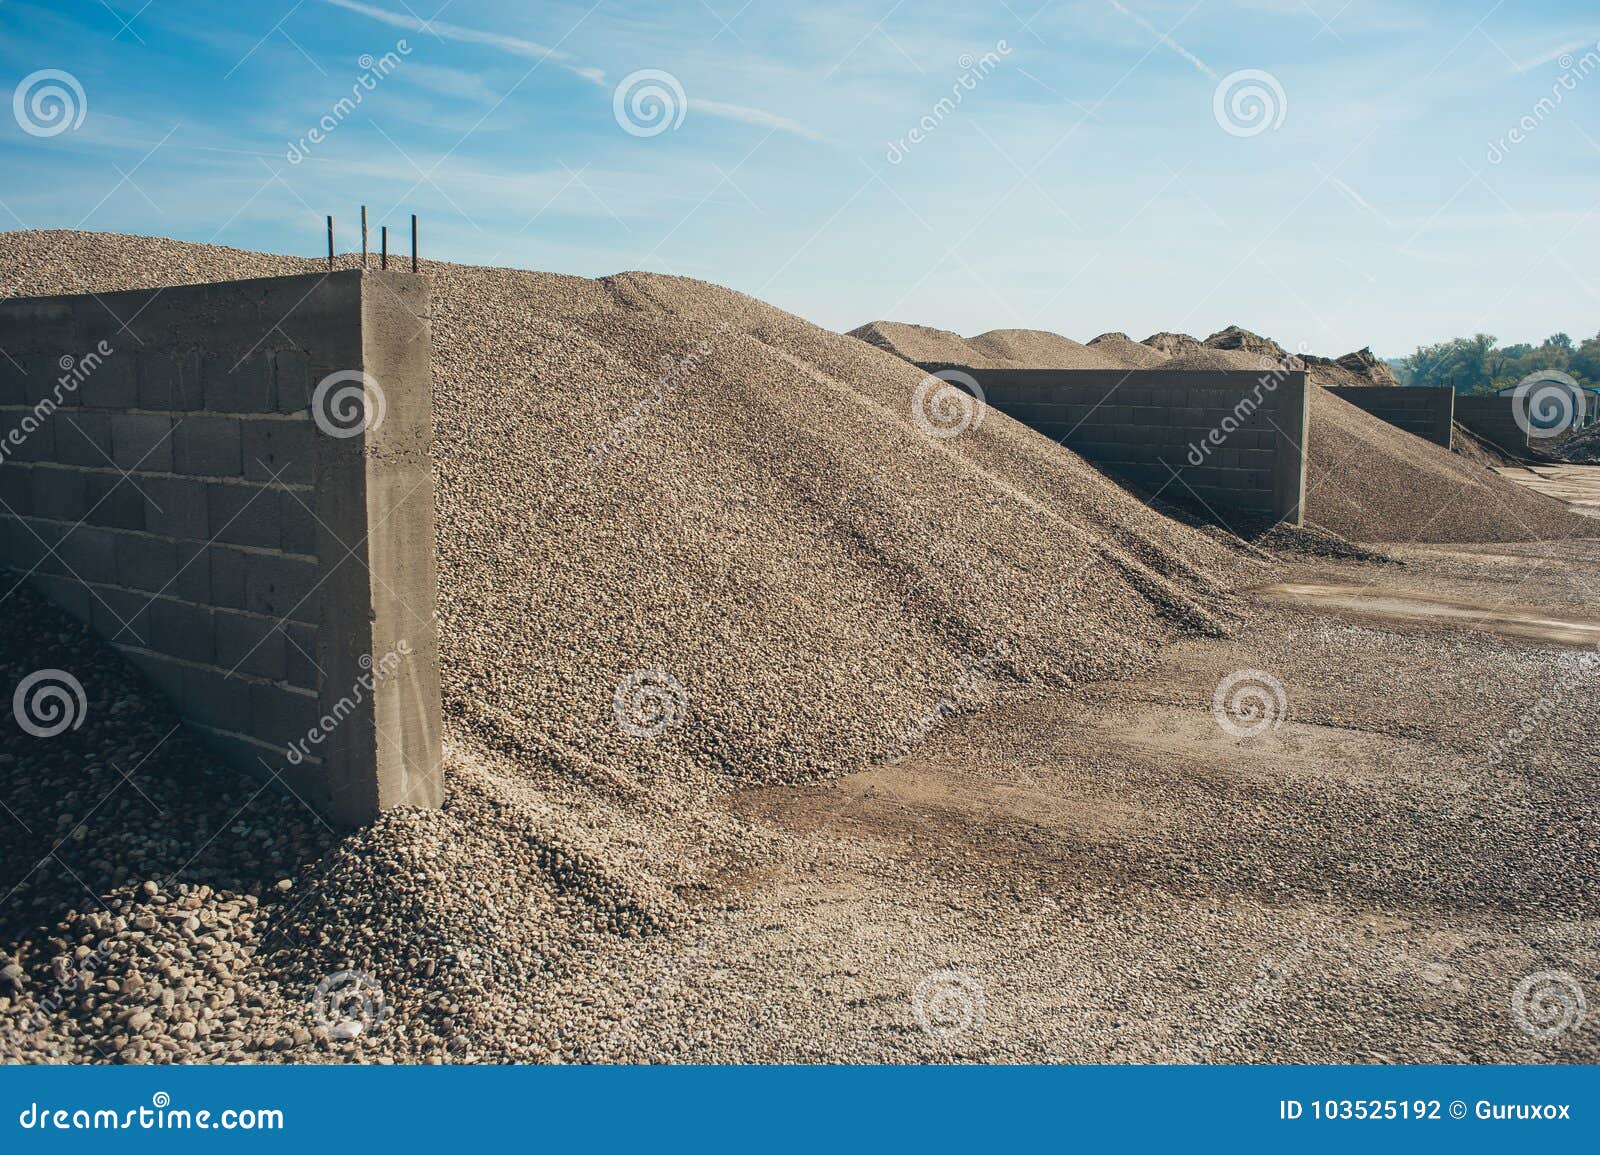 construction aggregate and gravel dumps at concrete production p